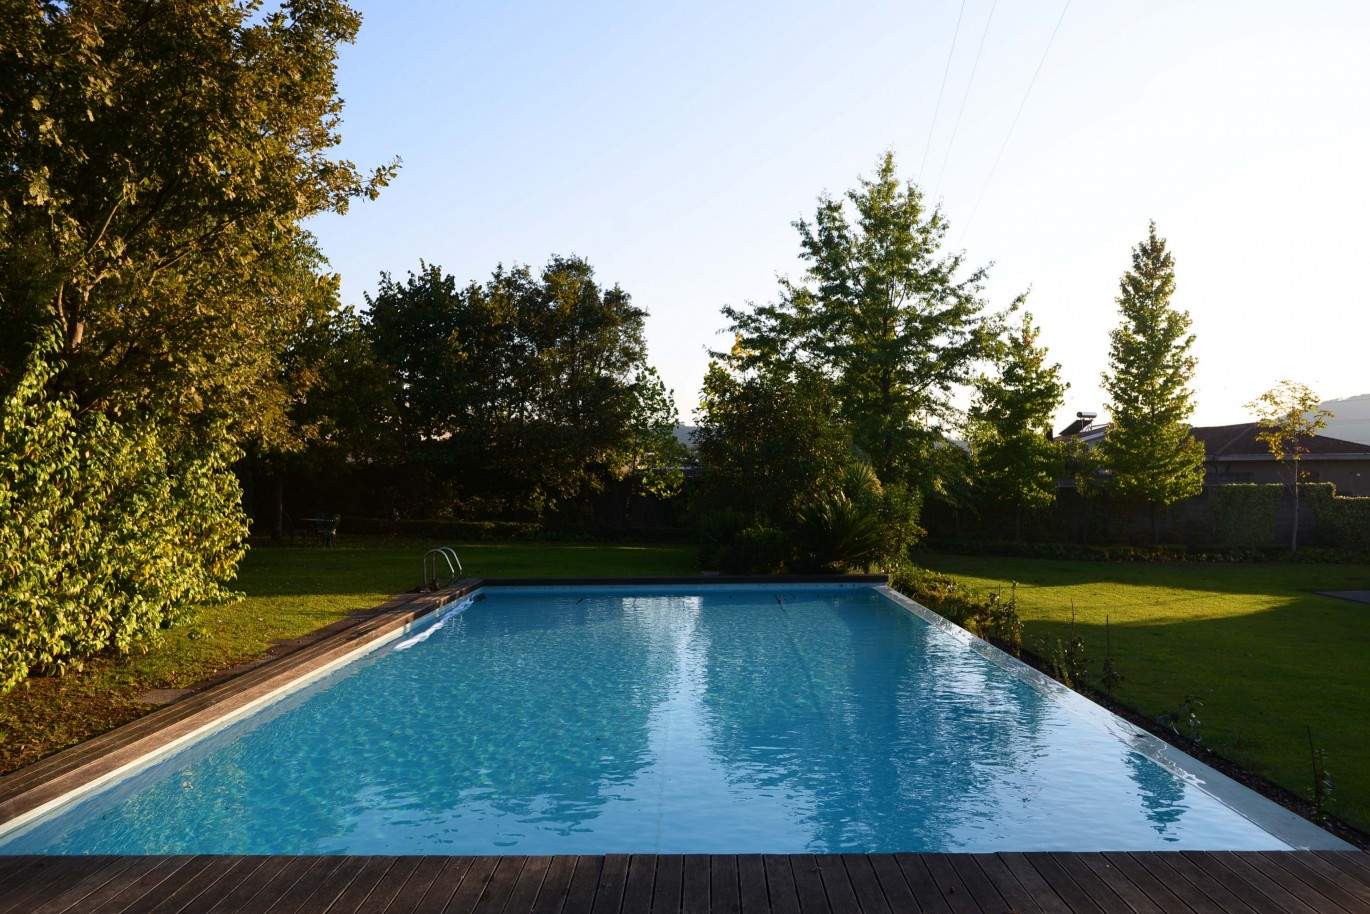 Moradia com piscina e jardim, para venda, em Valongo, Porto_209603